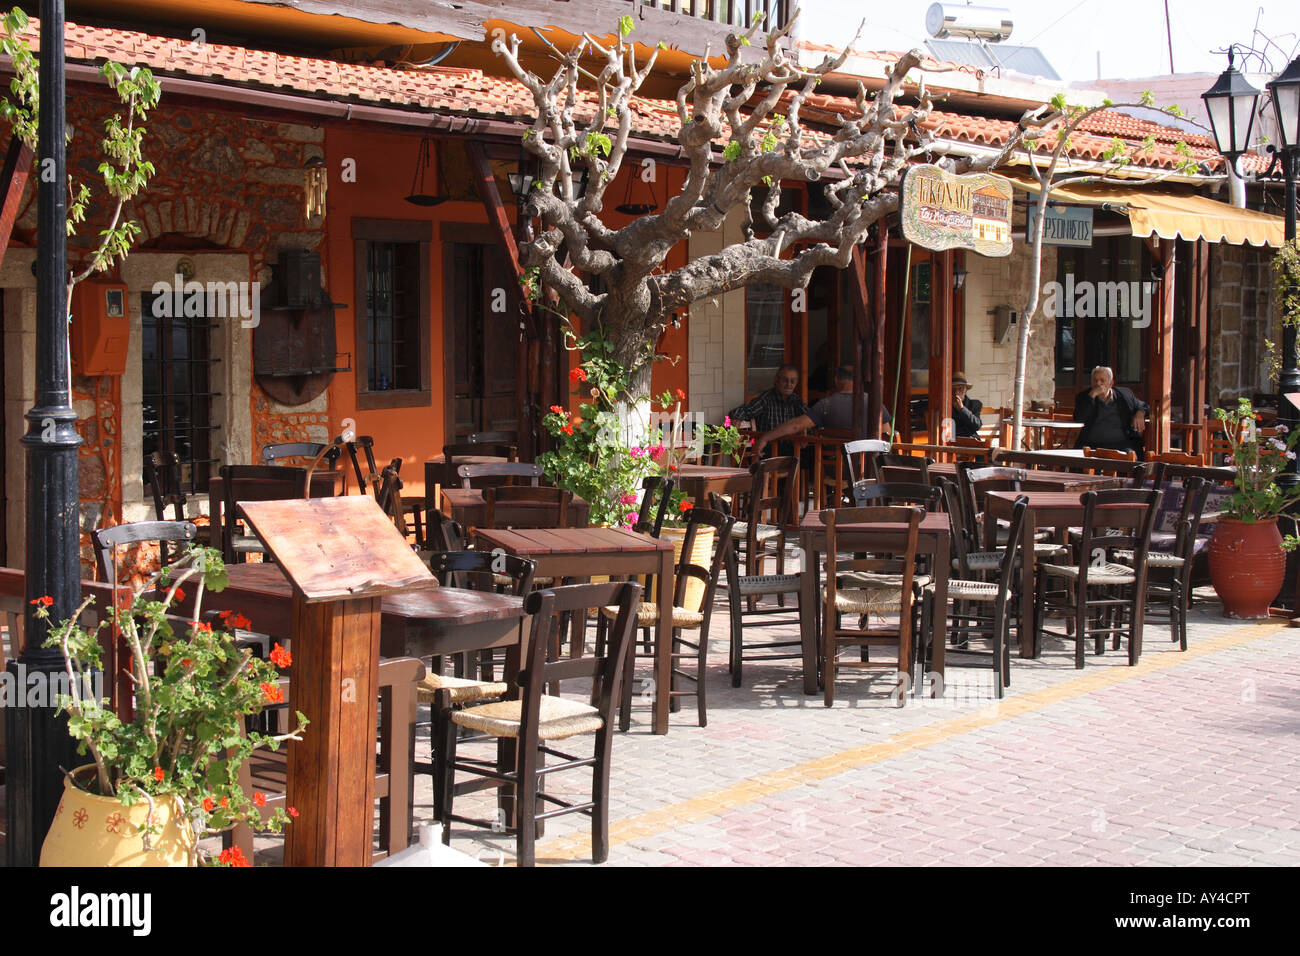 Restaurant dans village de montagne Pano Hersonissos, Crète, Grèce, Photo de Willy Matheisl Banque D'Images